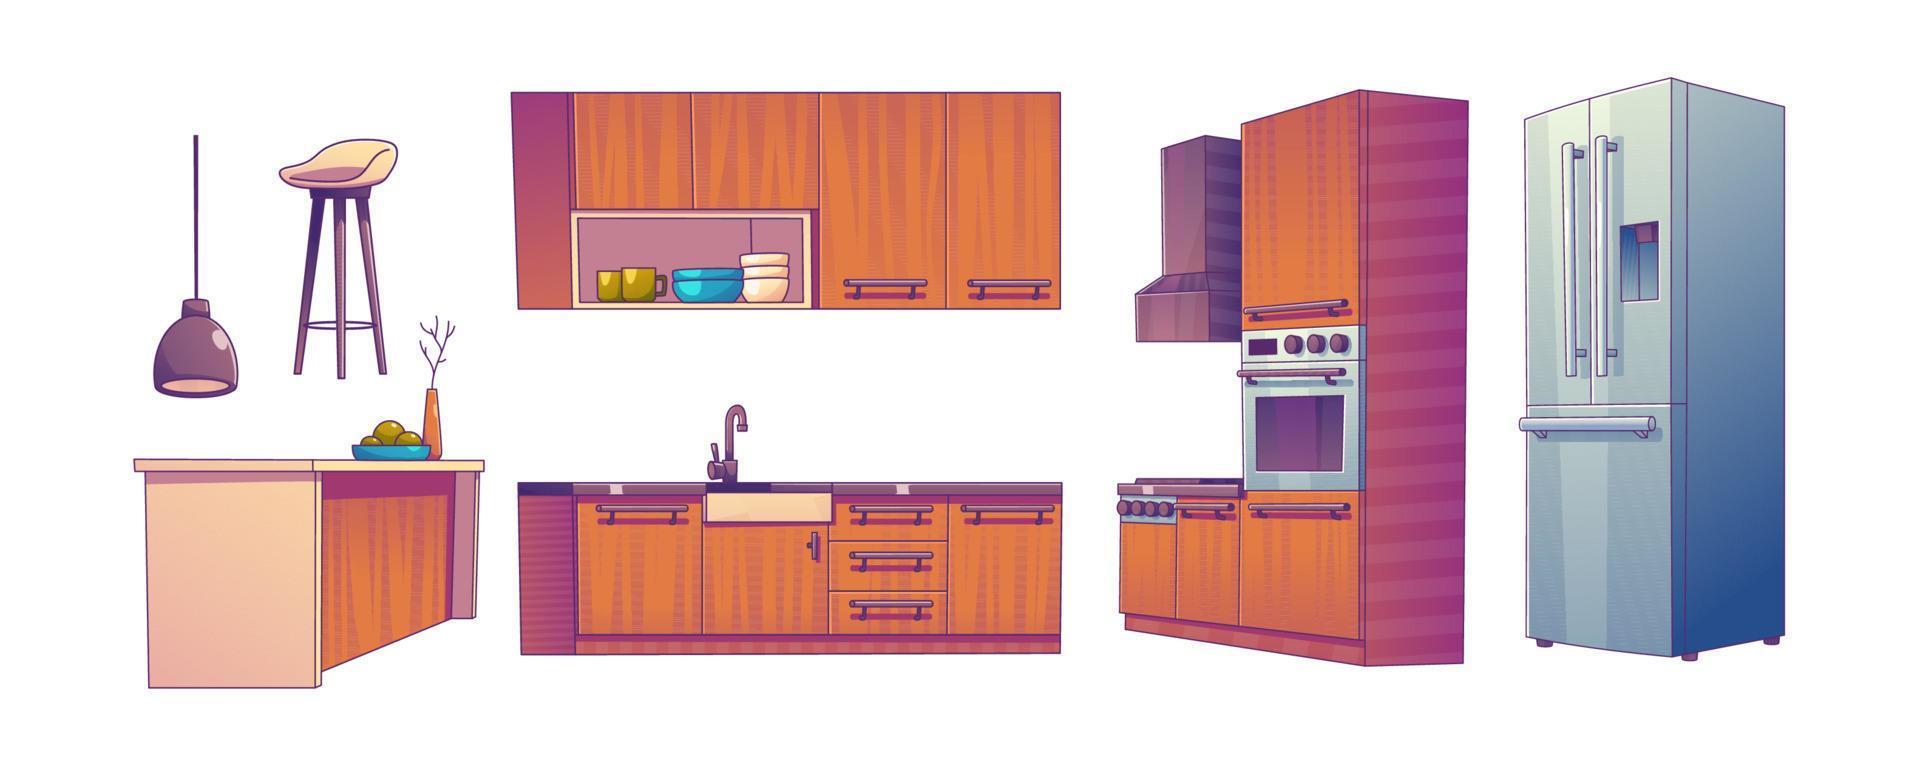 keuken kamer interieur met tafels, koelkast, fornuis vector